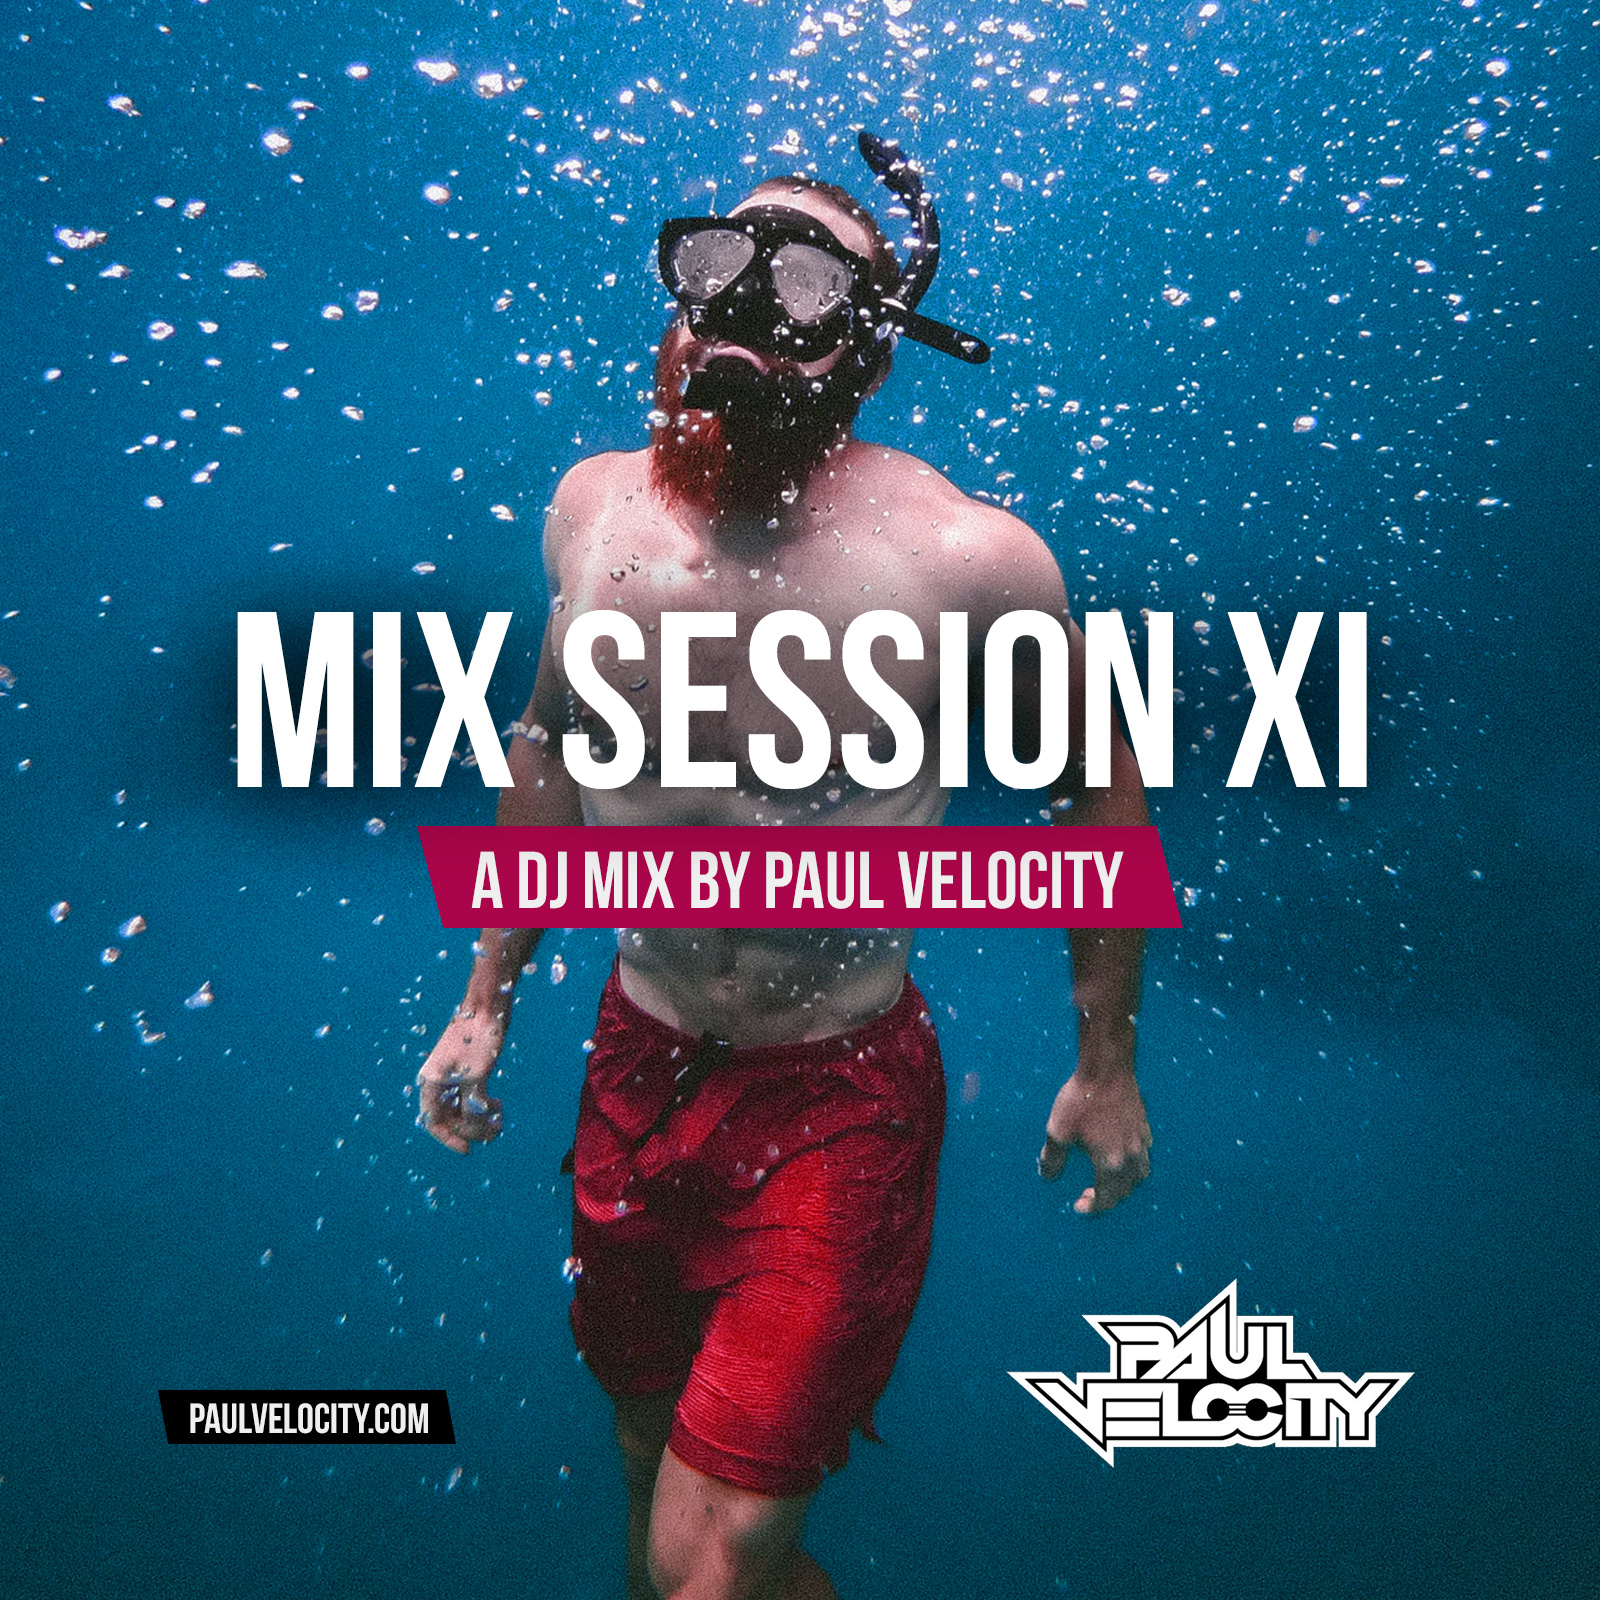 Mix Session XI